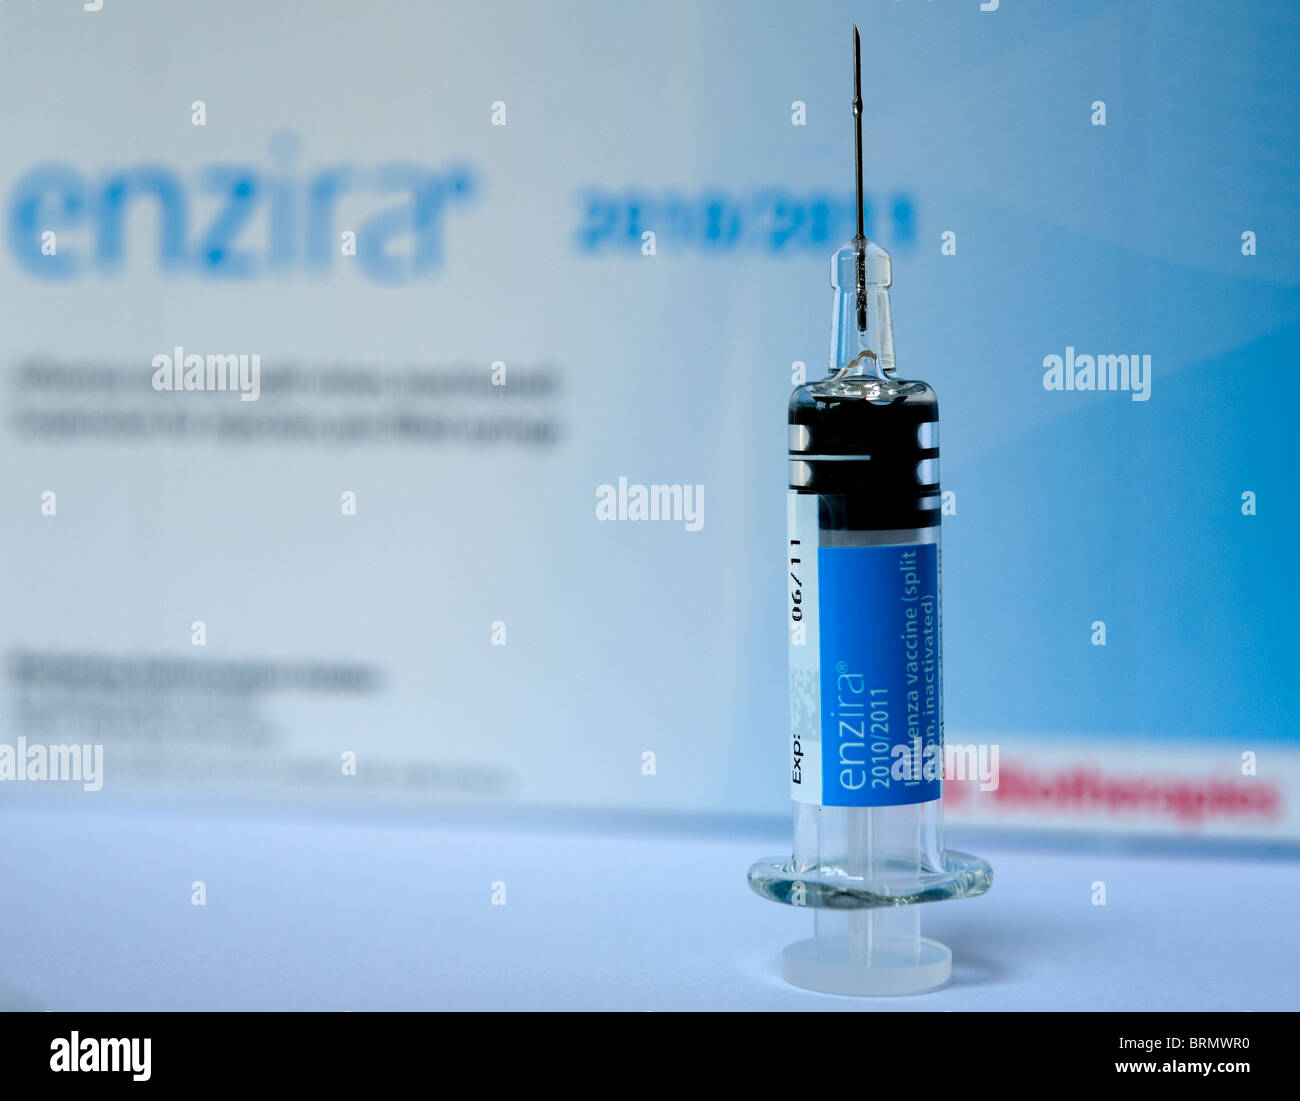 Le vaccin contre la grippe saison 2010-11. Enzira vaccination combinée montrant la seringue et le paquet de drogue Banque D'Images